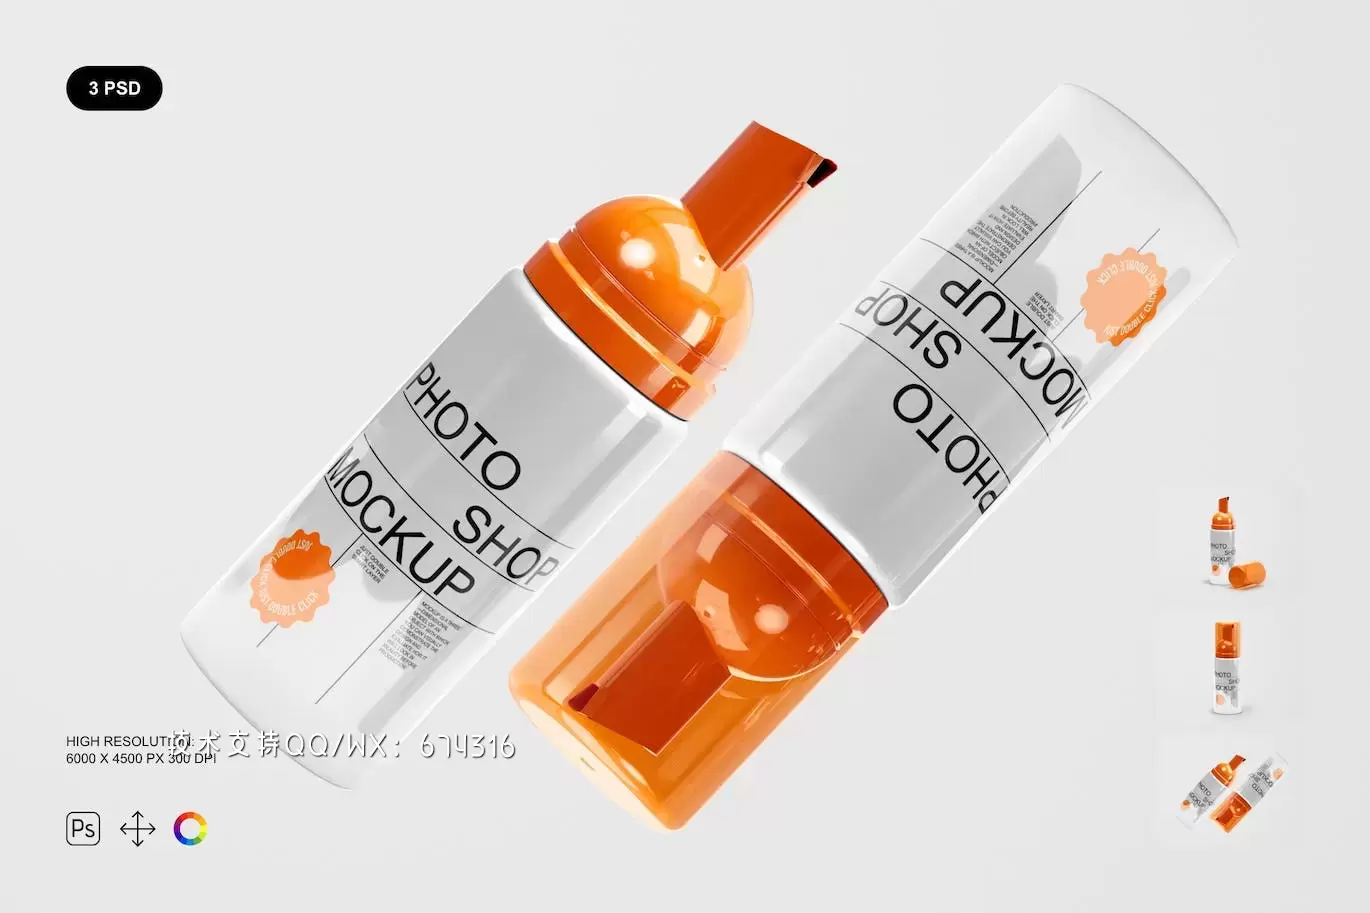 化妆品瓶品牌包装设计样机套装 (PSD)免费下载